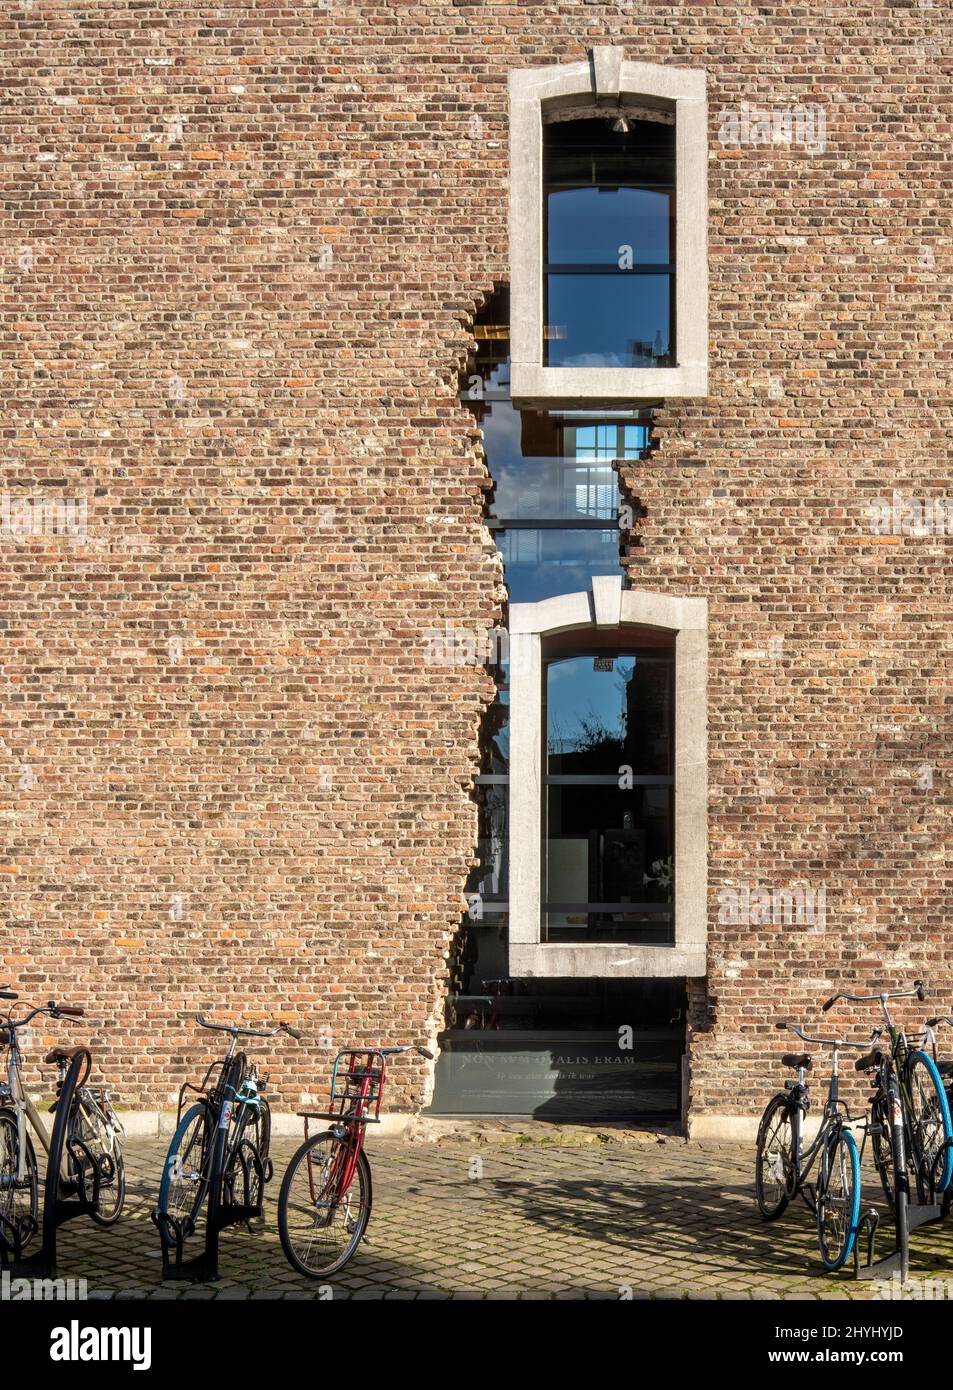 Maastricht, Oude Minderbroedersklooster, Franziskanerkloster, Heute: Sociaal Historisch Centrum voor Limburg, Backsteinmauer mit Fensterlaibung aus Bl Stock Photo